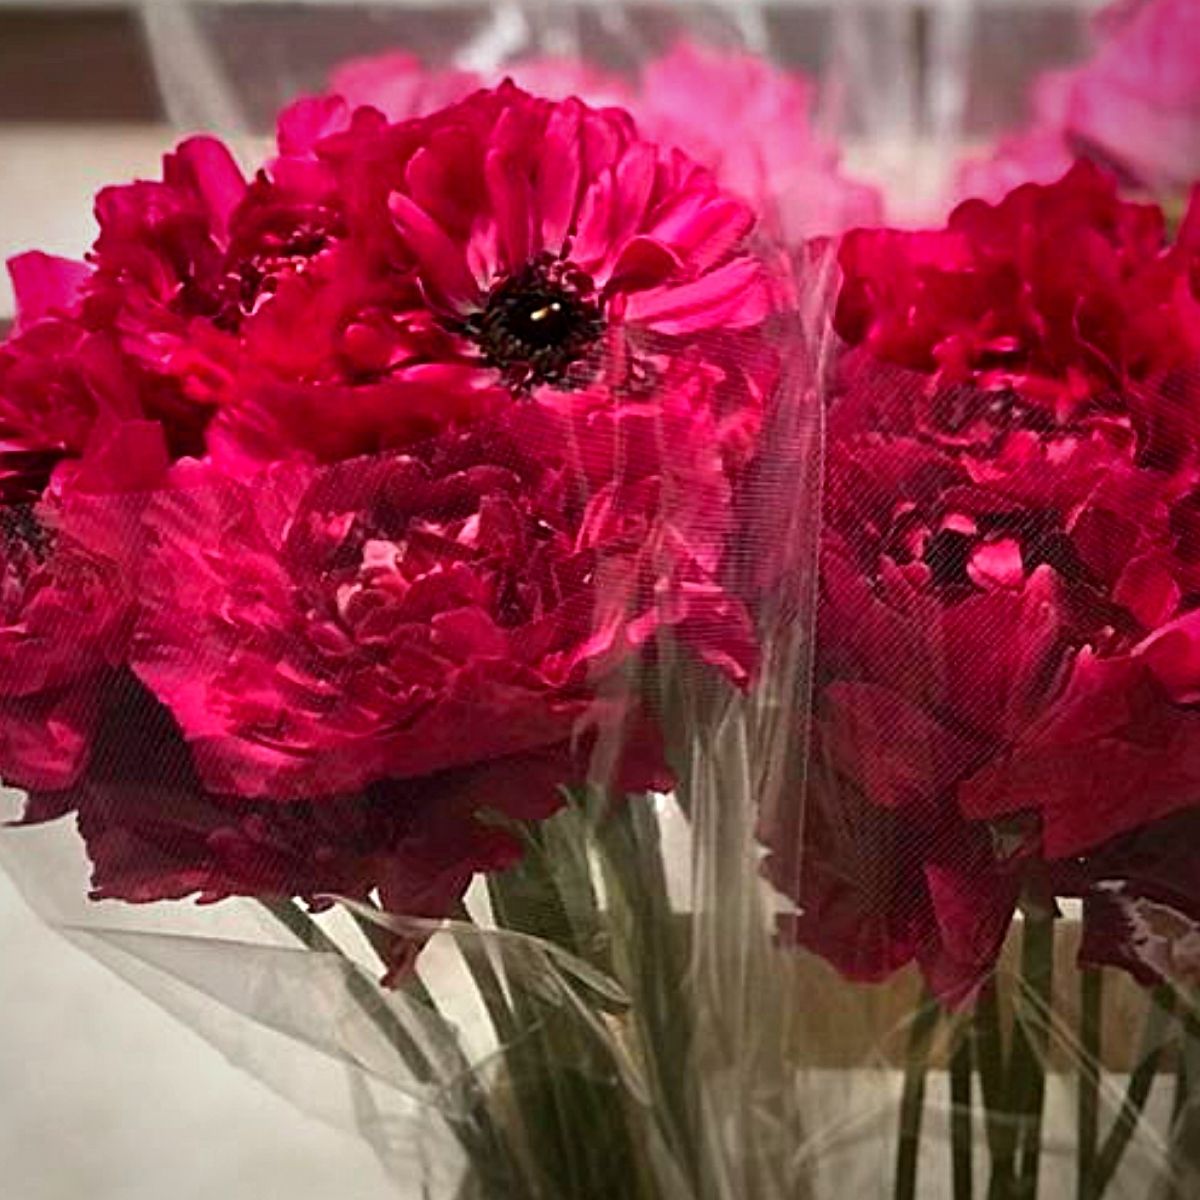 Japanese Flowers - Peter van Delft Weekly #51- Ranunculus Charlotte Red